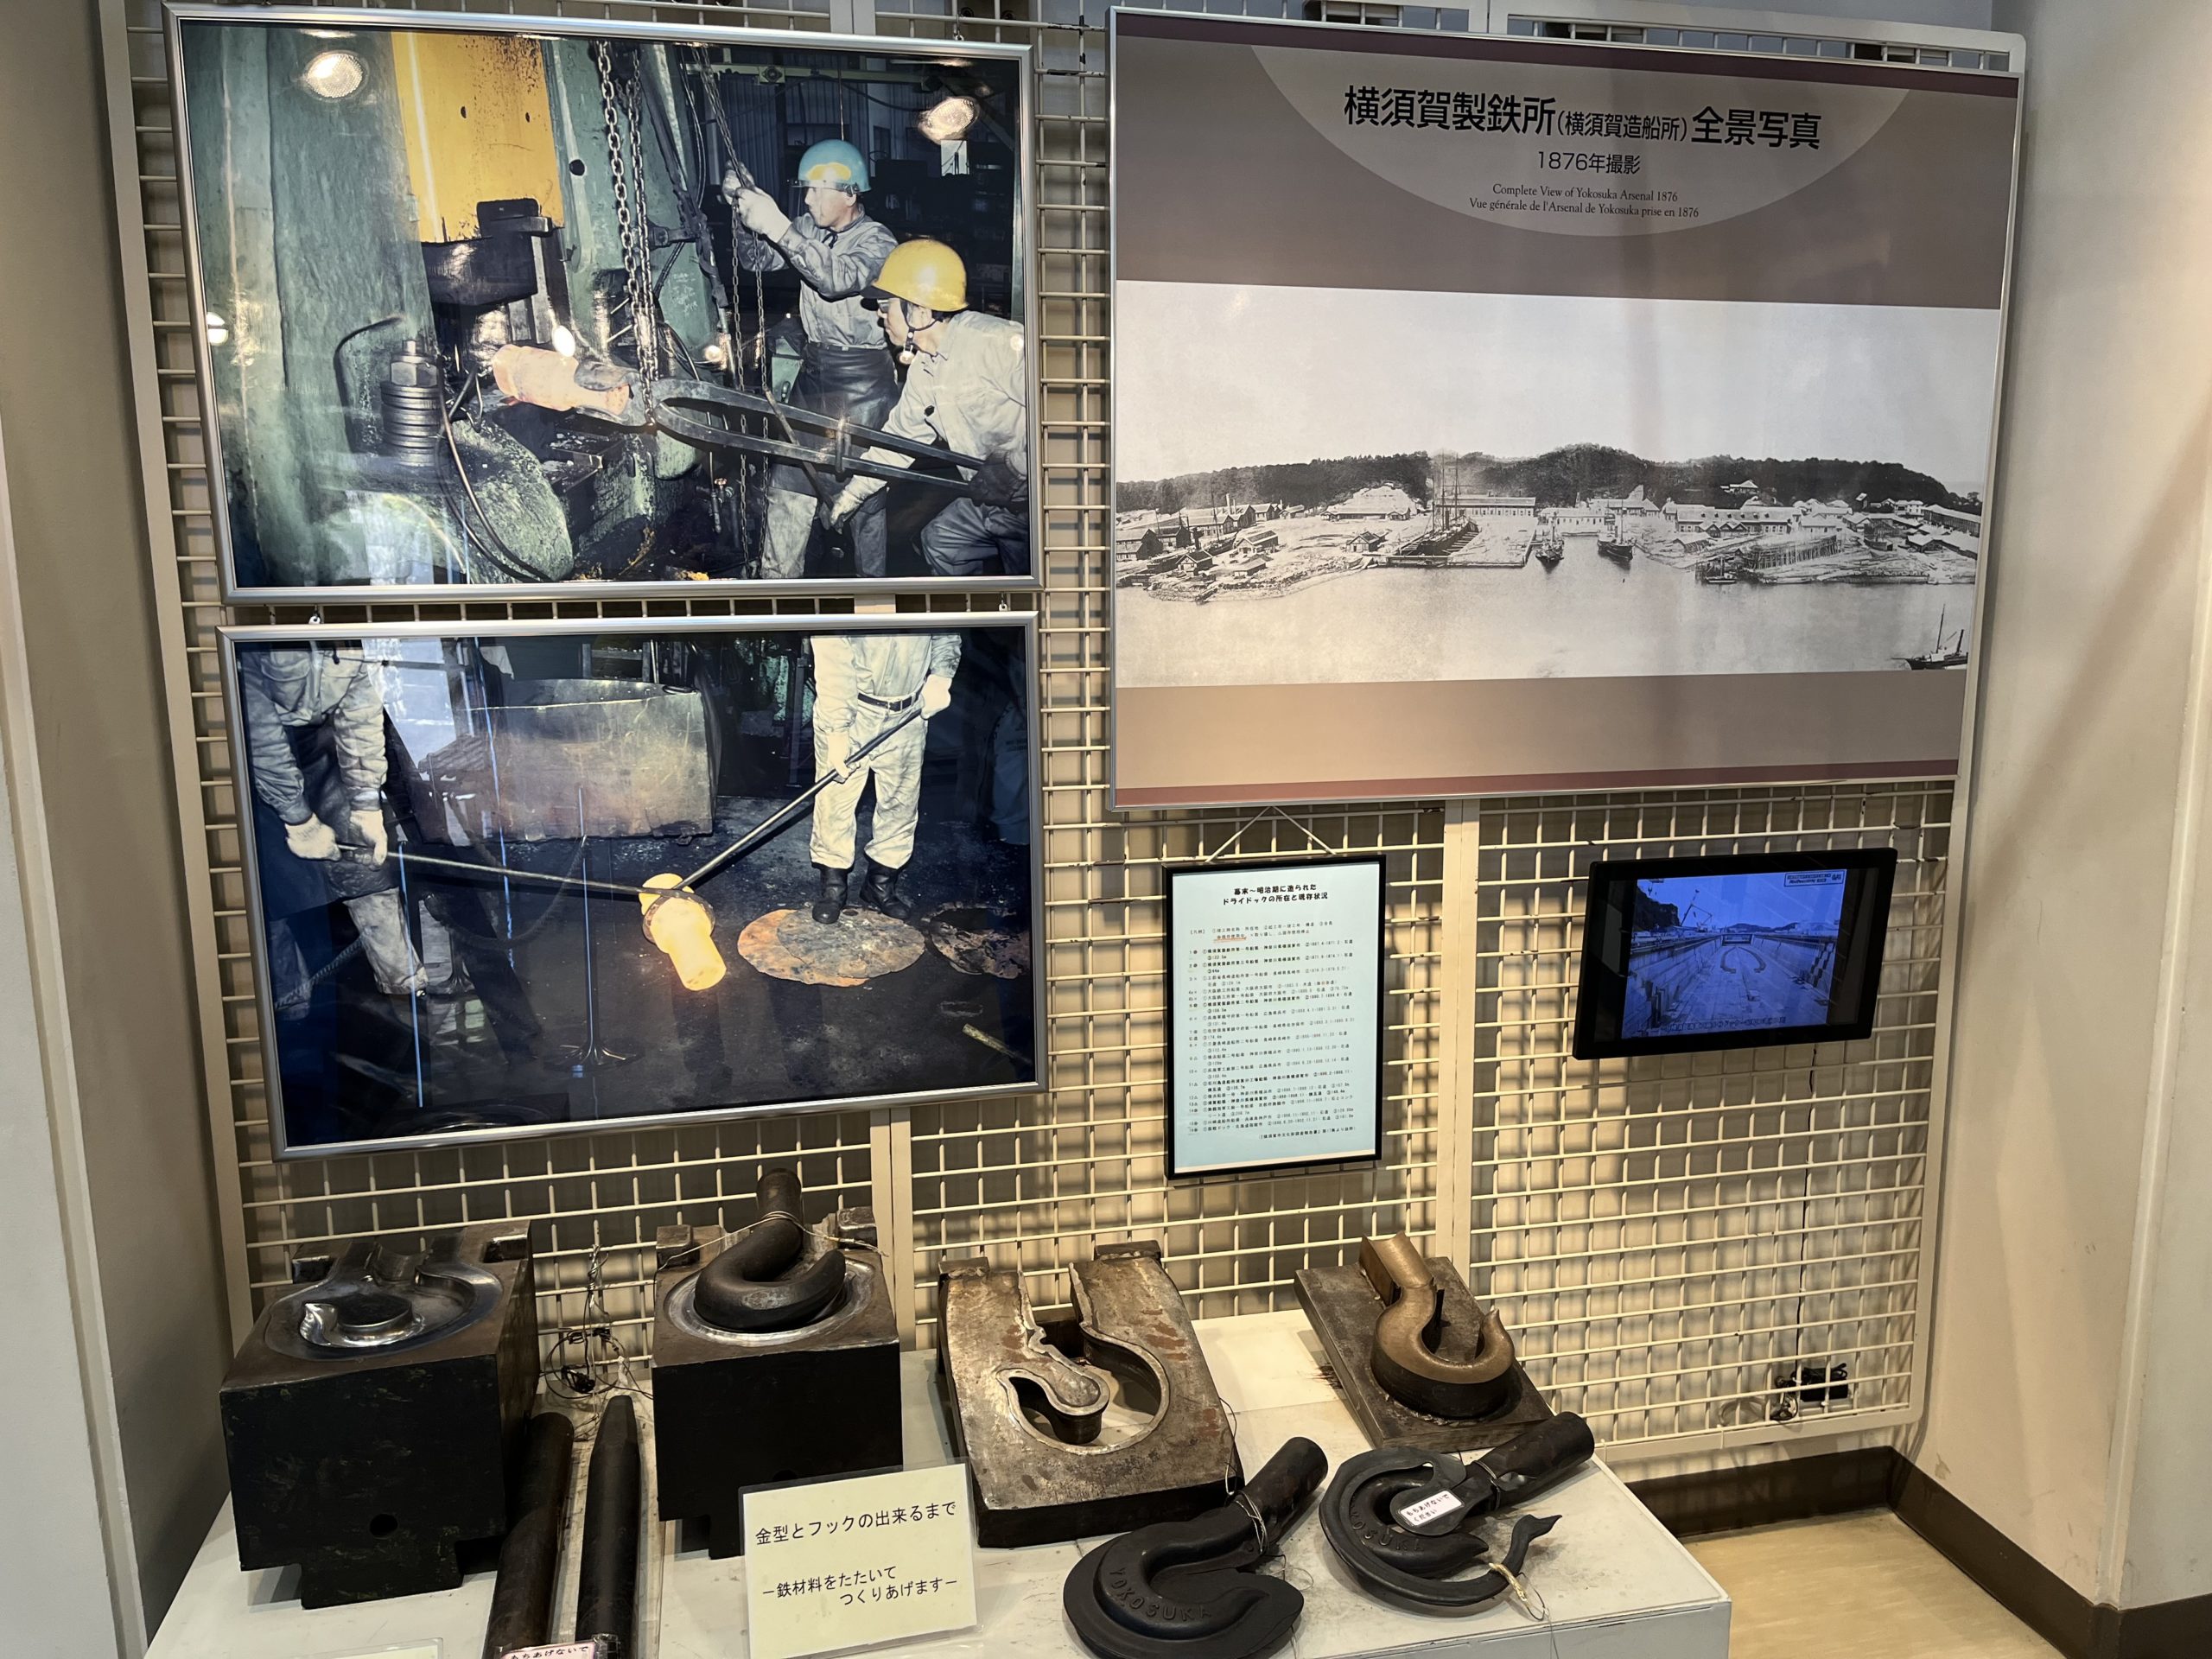 横須賀製鉄所の歴史の説明